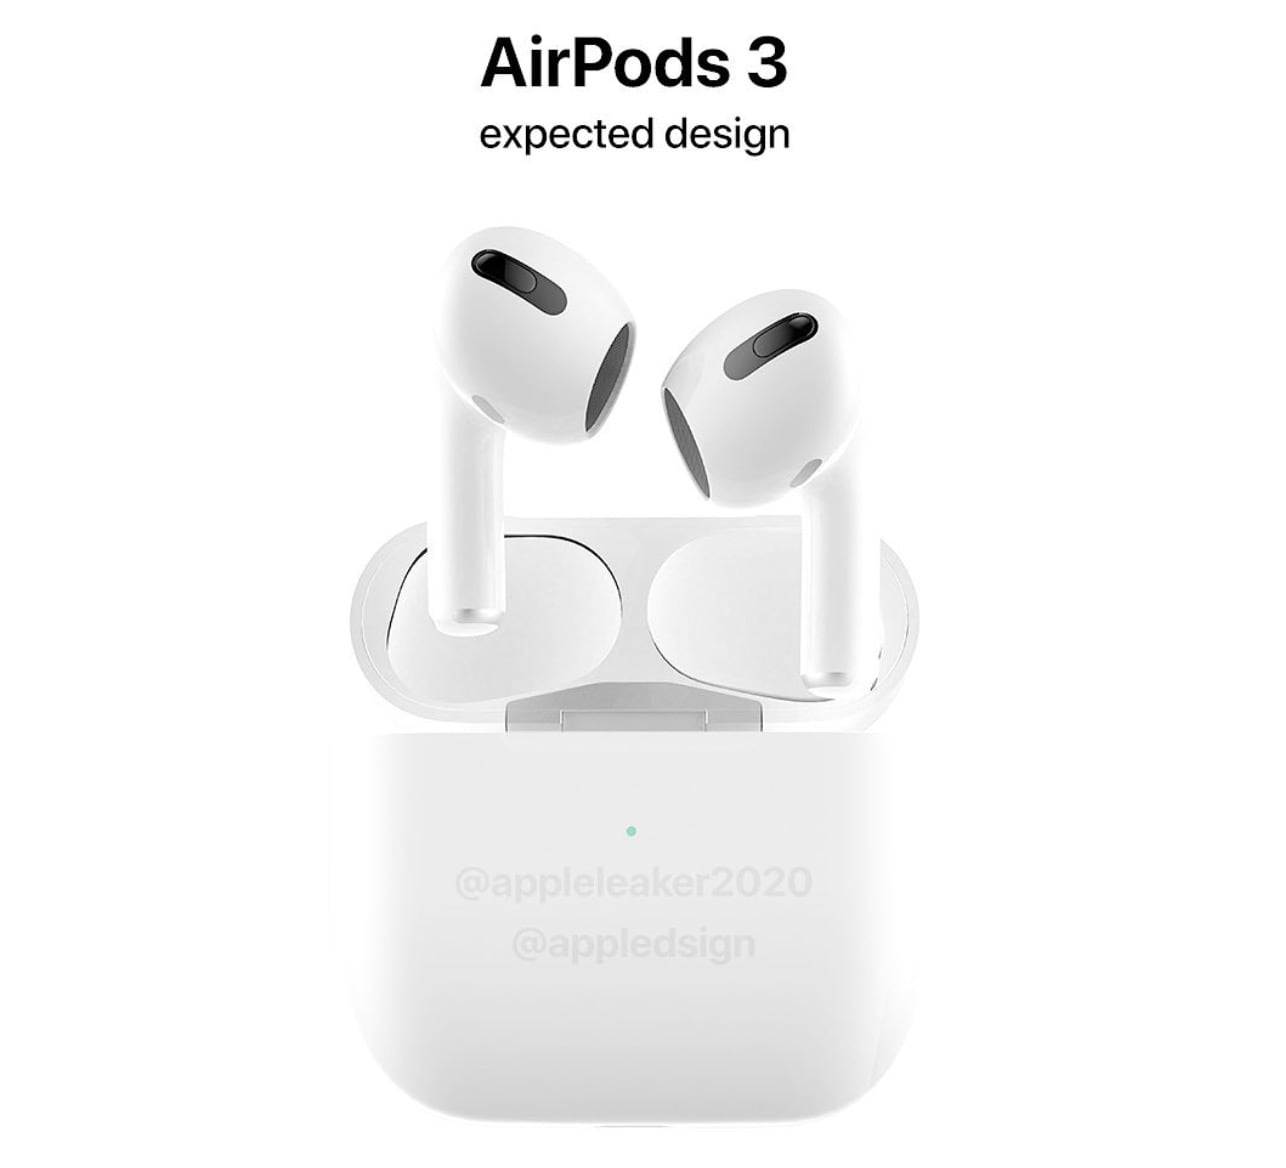 Czy tak będą wyglądać najnowsze Apple AirPods 3? polecane, ciekawostki Premiera, Apple, AirPods 3. generacji, AirPods 3  O AirPods 3 mówi się w sieci już od kilku miesięcy. Nowe słuchawki, które mają być podobne do obecnej wersji Pro mają pojawić się w sprzedaży w przyszłym roku. Jak będą wyglądać? AirPods3 1 1